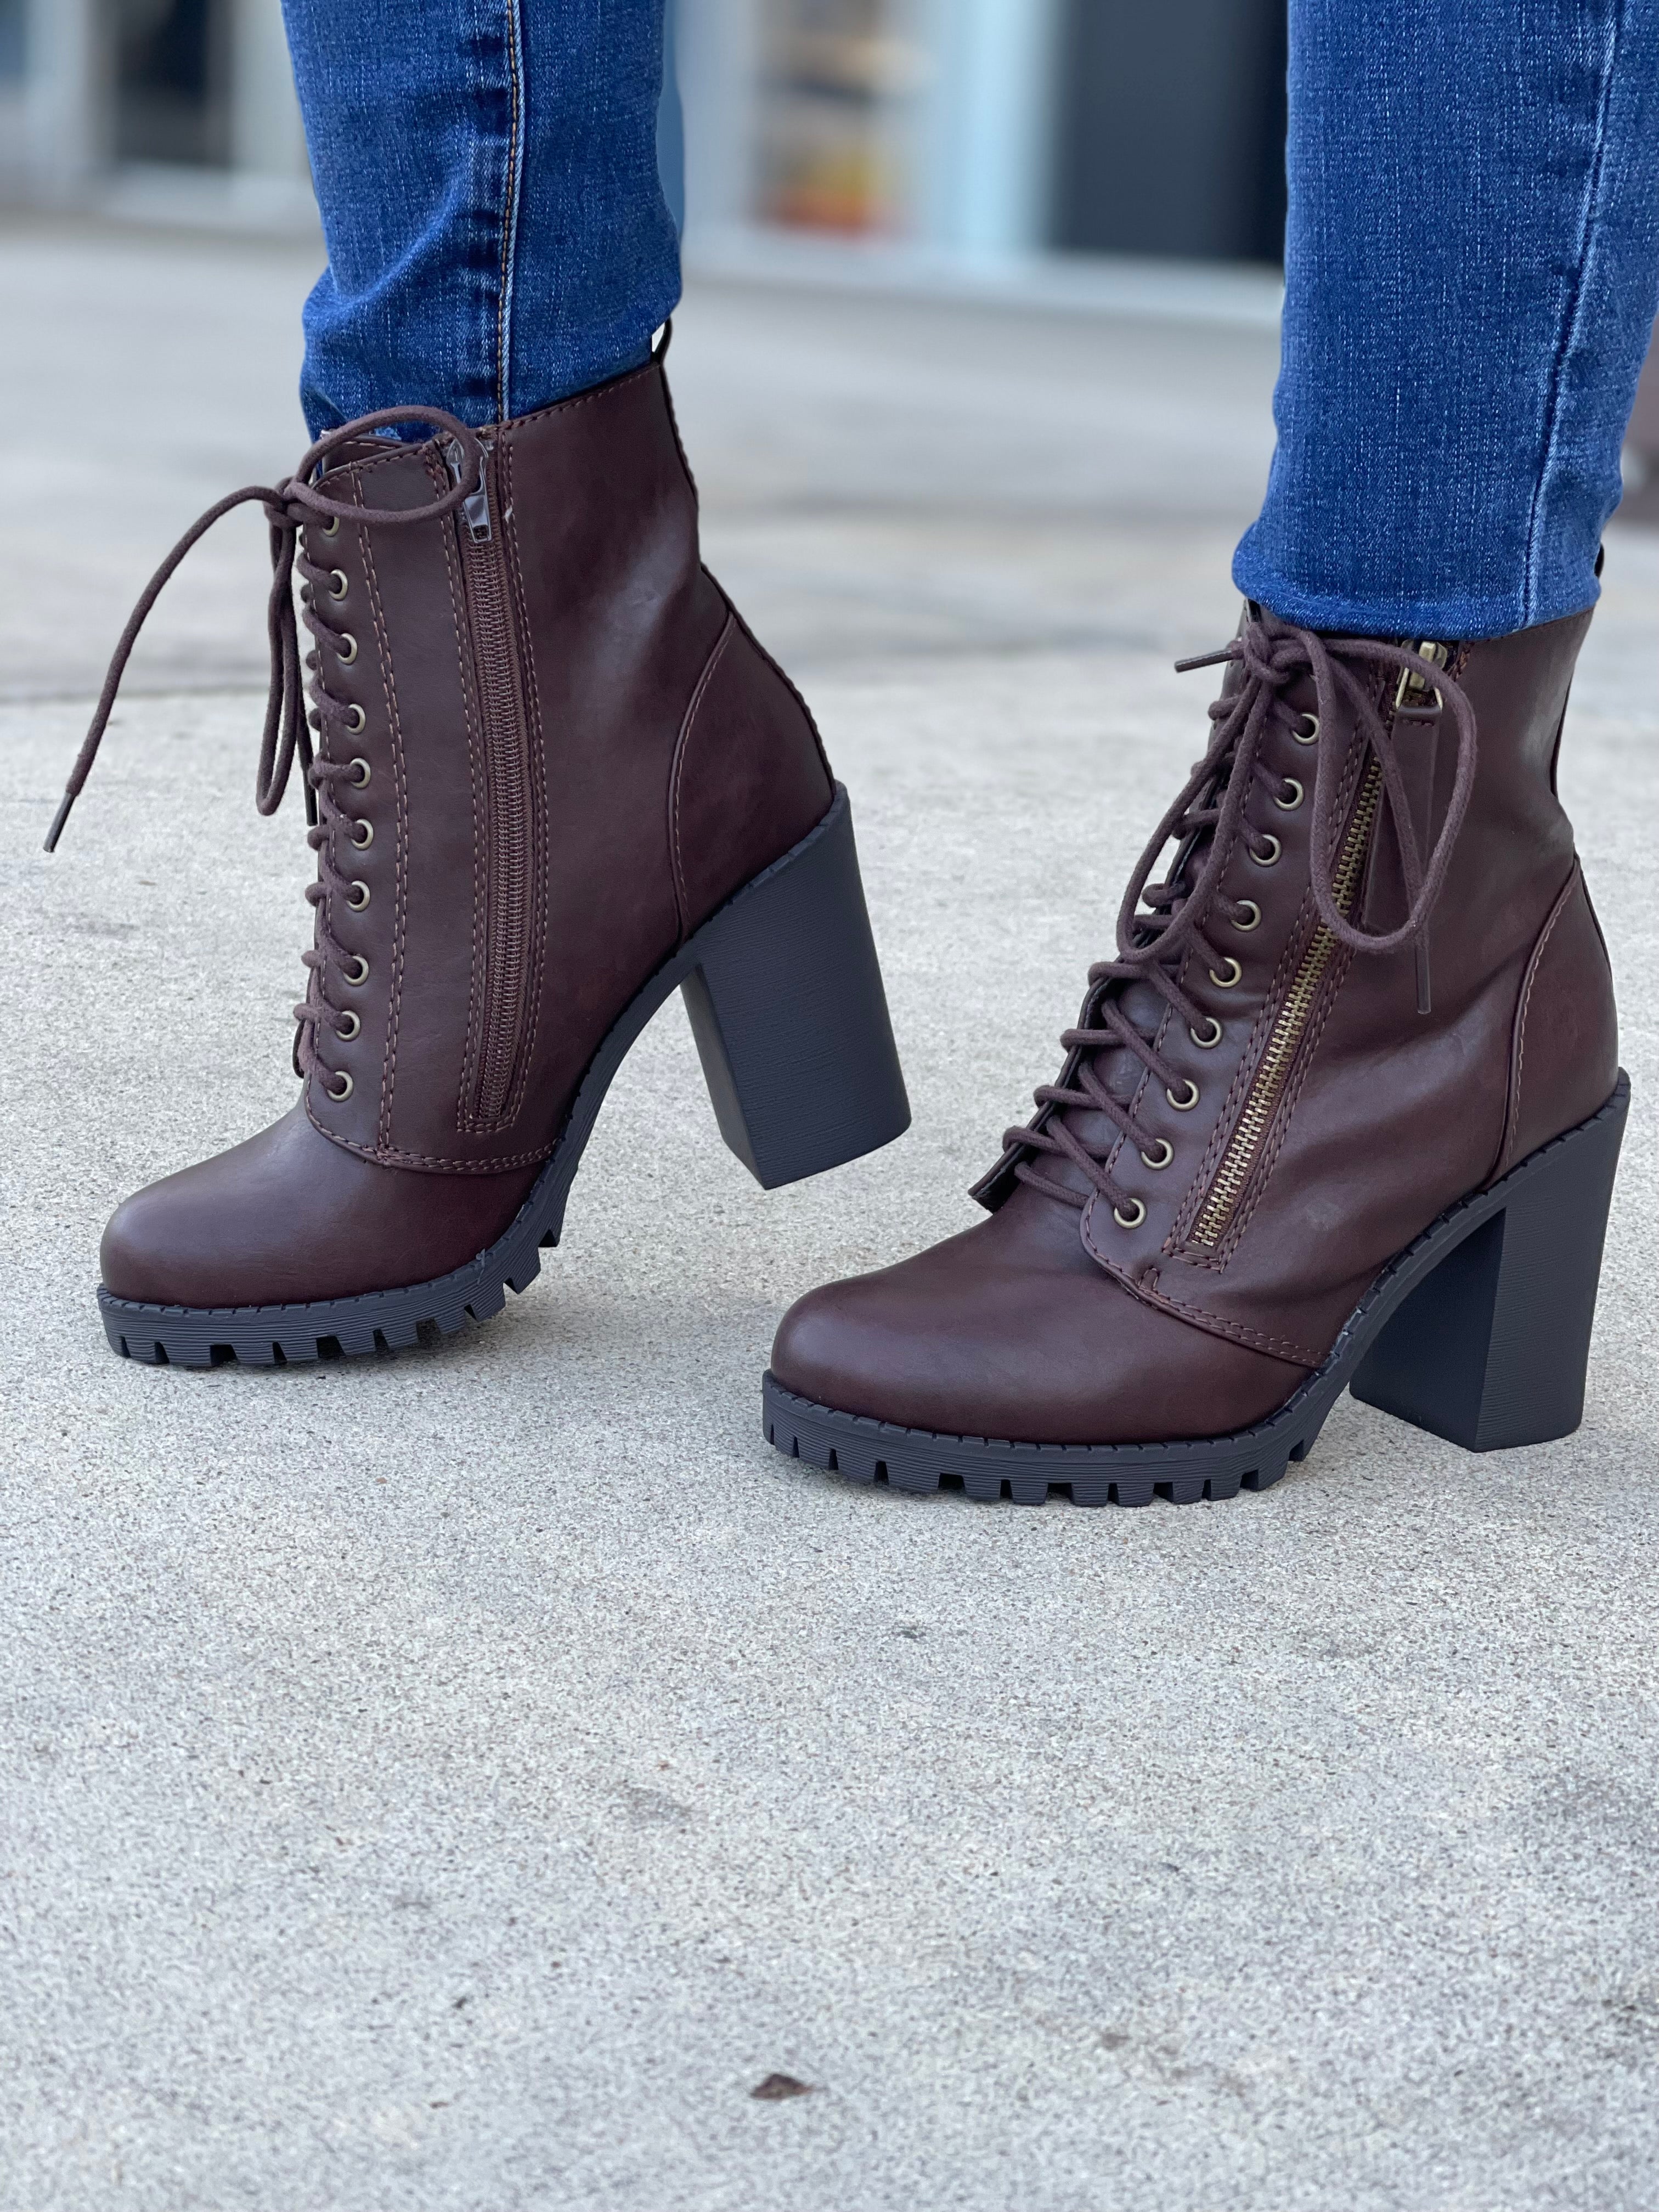 Queen boots